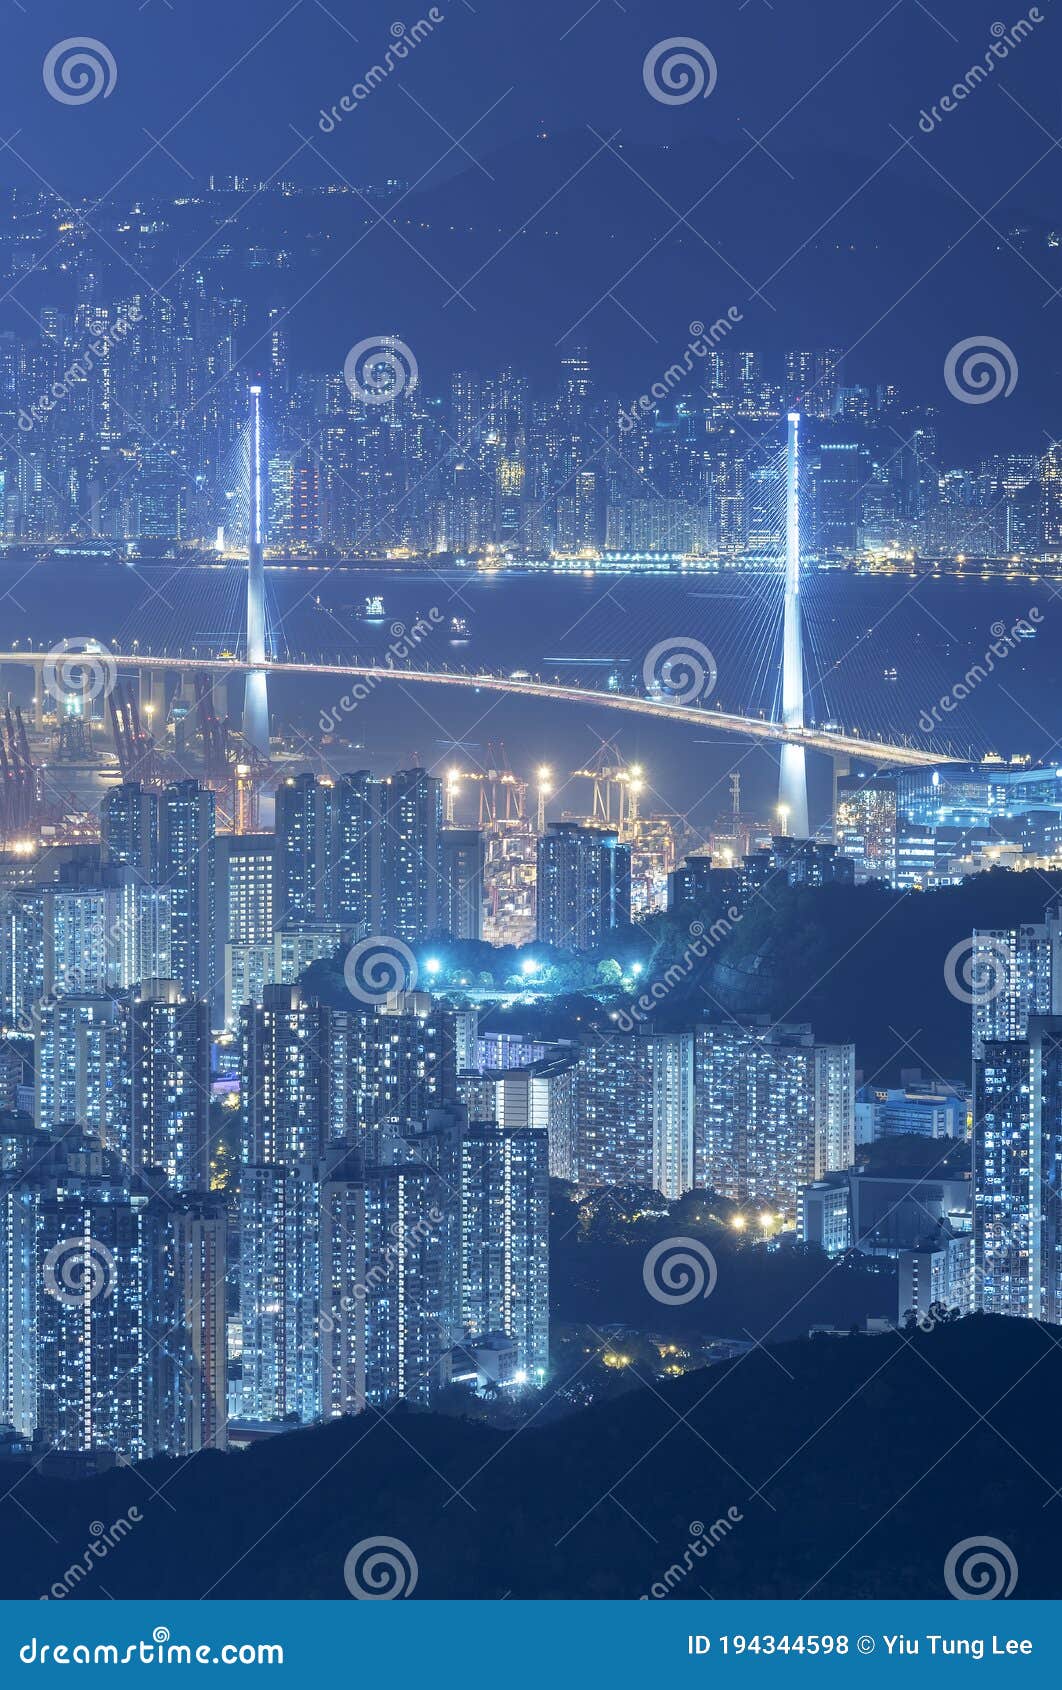 bridge and dowtown of hong kong city at night